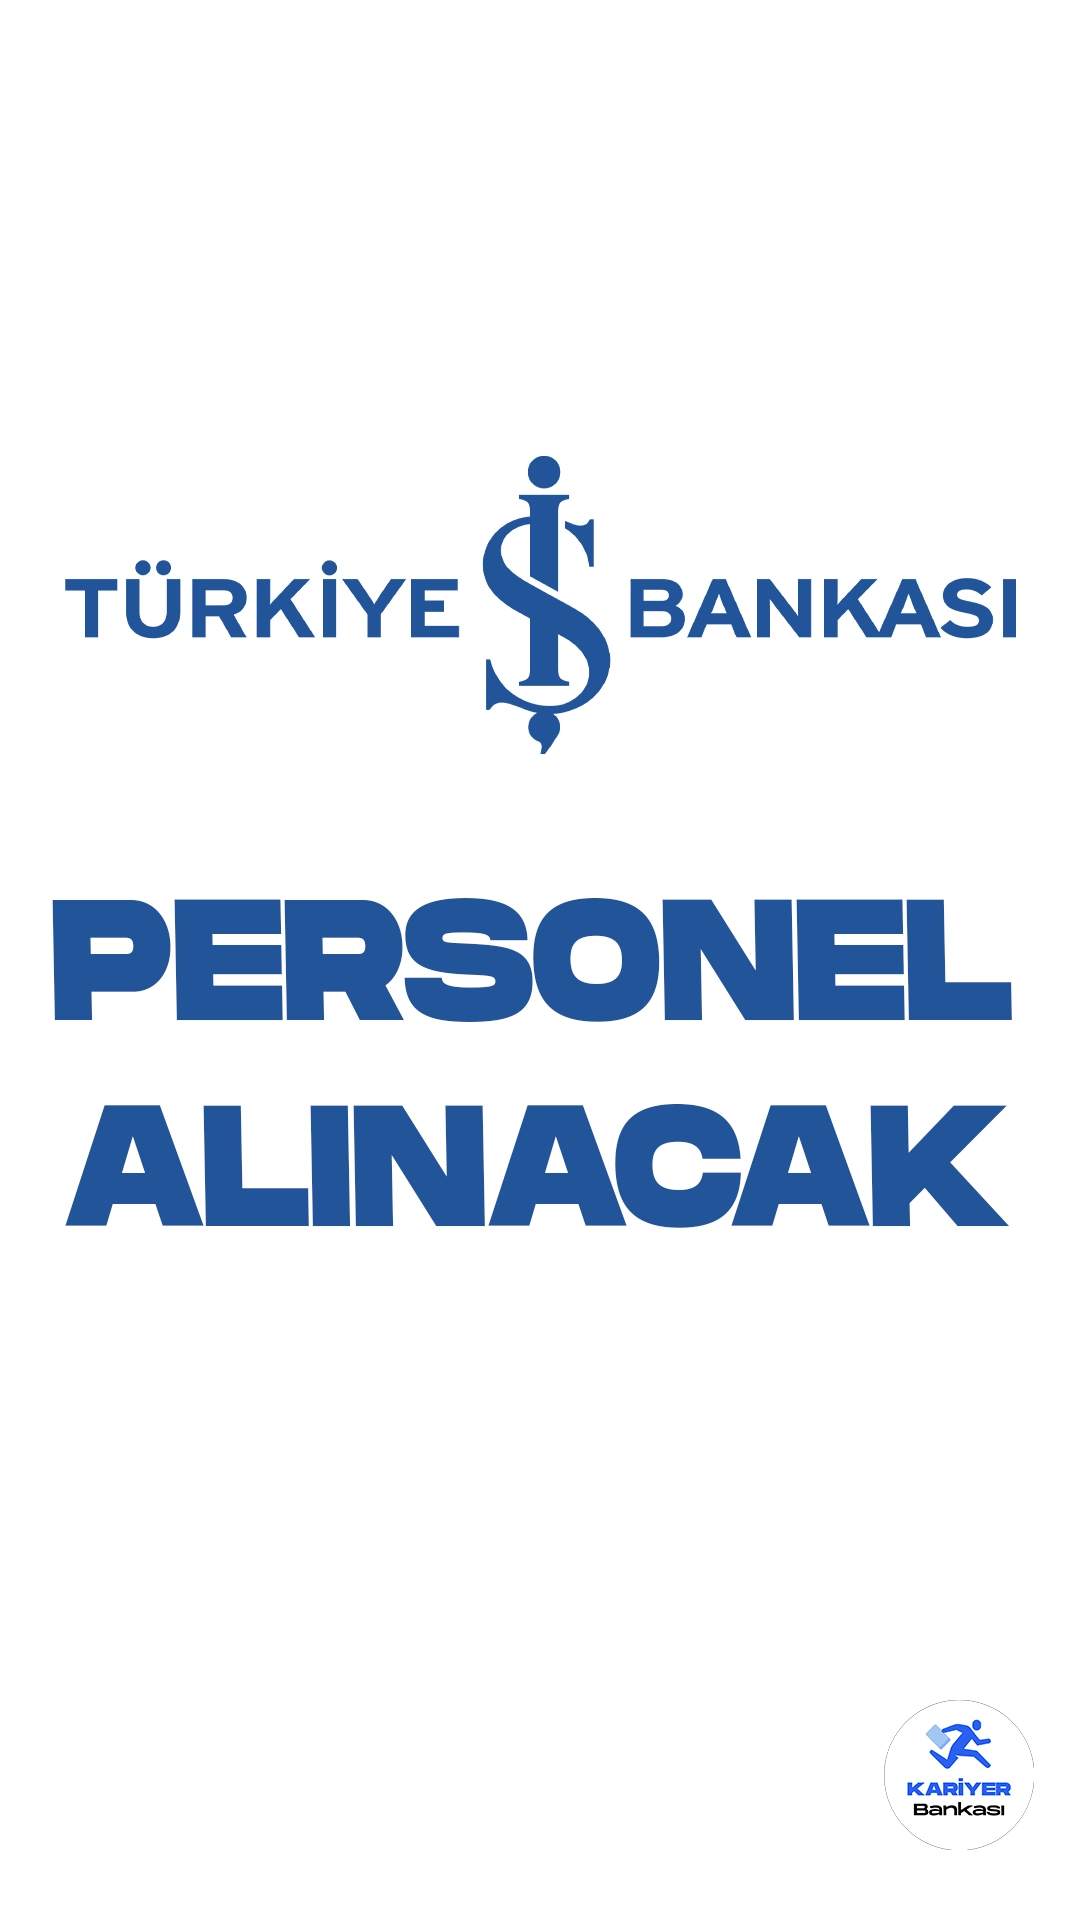 İş Bankası Personel Alımı Başvuruları Sürüyor. Türkiye İş Bankası insan kaynakları sayfası üzerinden yayımlanan duyuruda, İş Bankası’na müfettiş yardımcısı olmak üzere personel alımı yapılacağı aktarıldı. Başvuru yapacak adayların belirtilen başvuru şartlarını taşıması gerekmektedir.